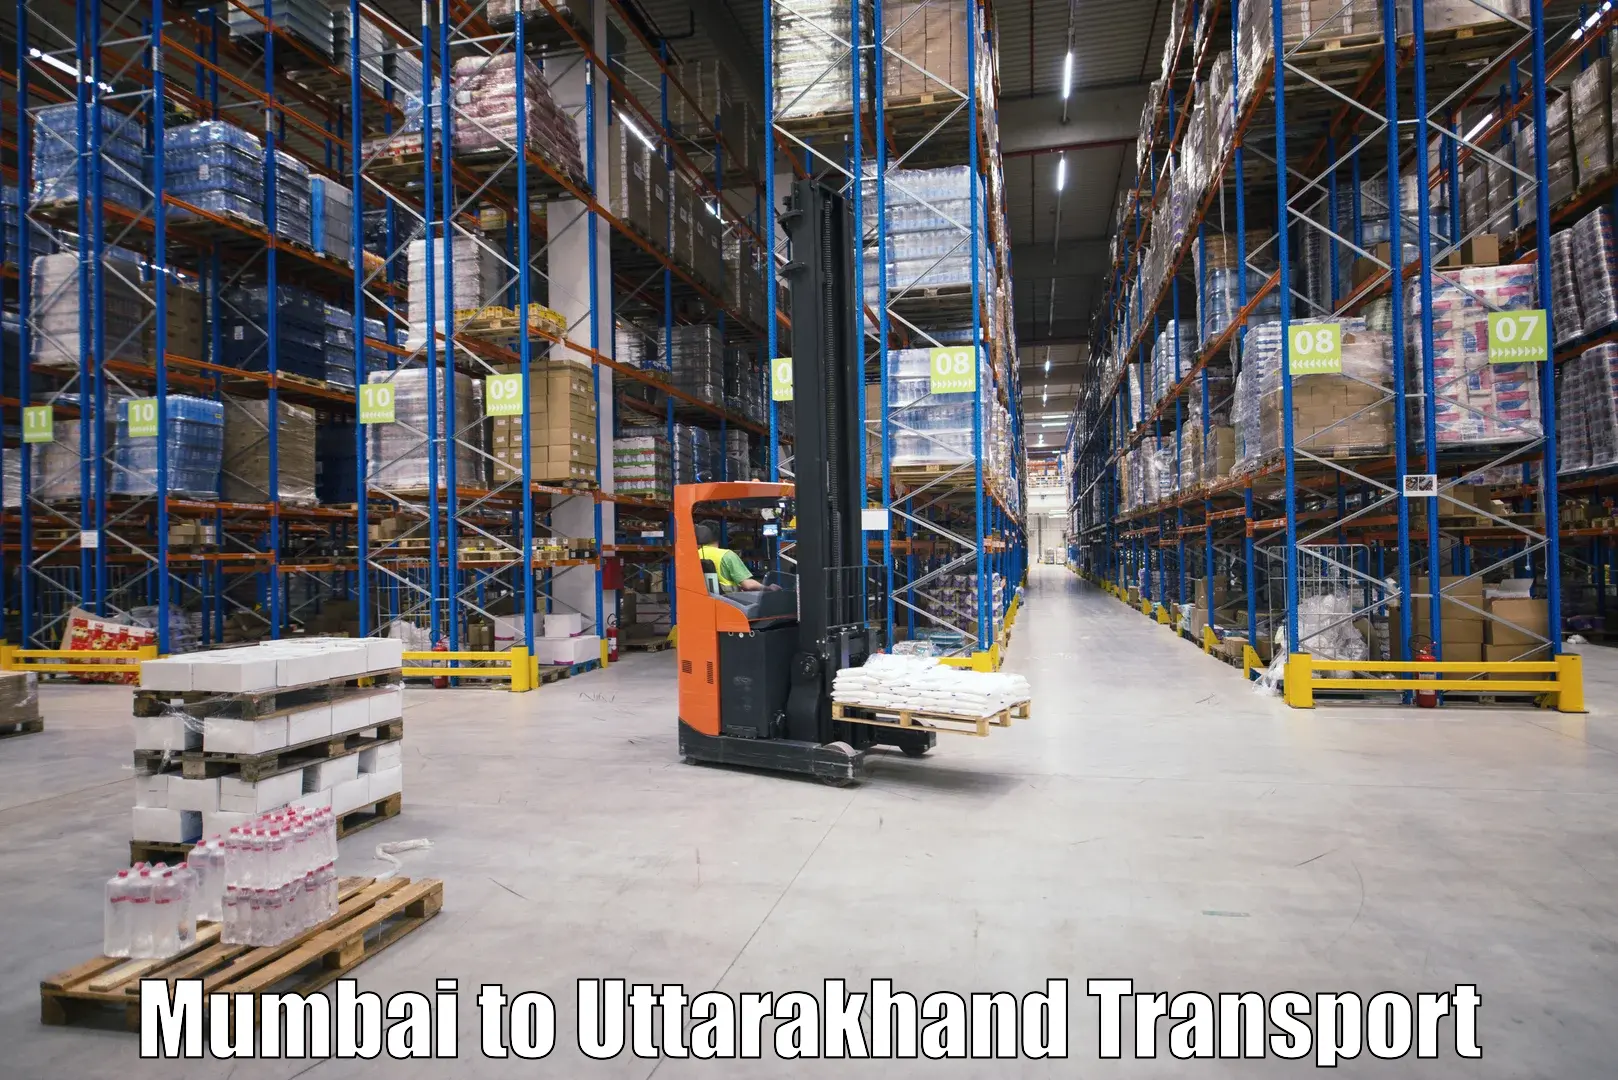 Furniture transport service Mumbai to Udham Singh Nagar